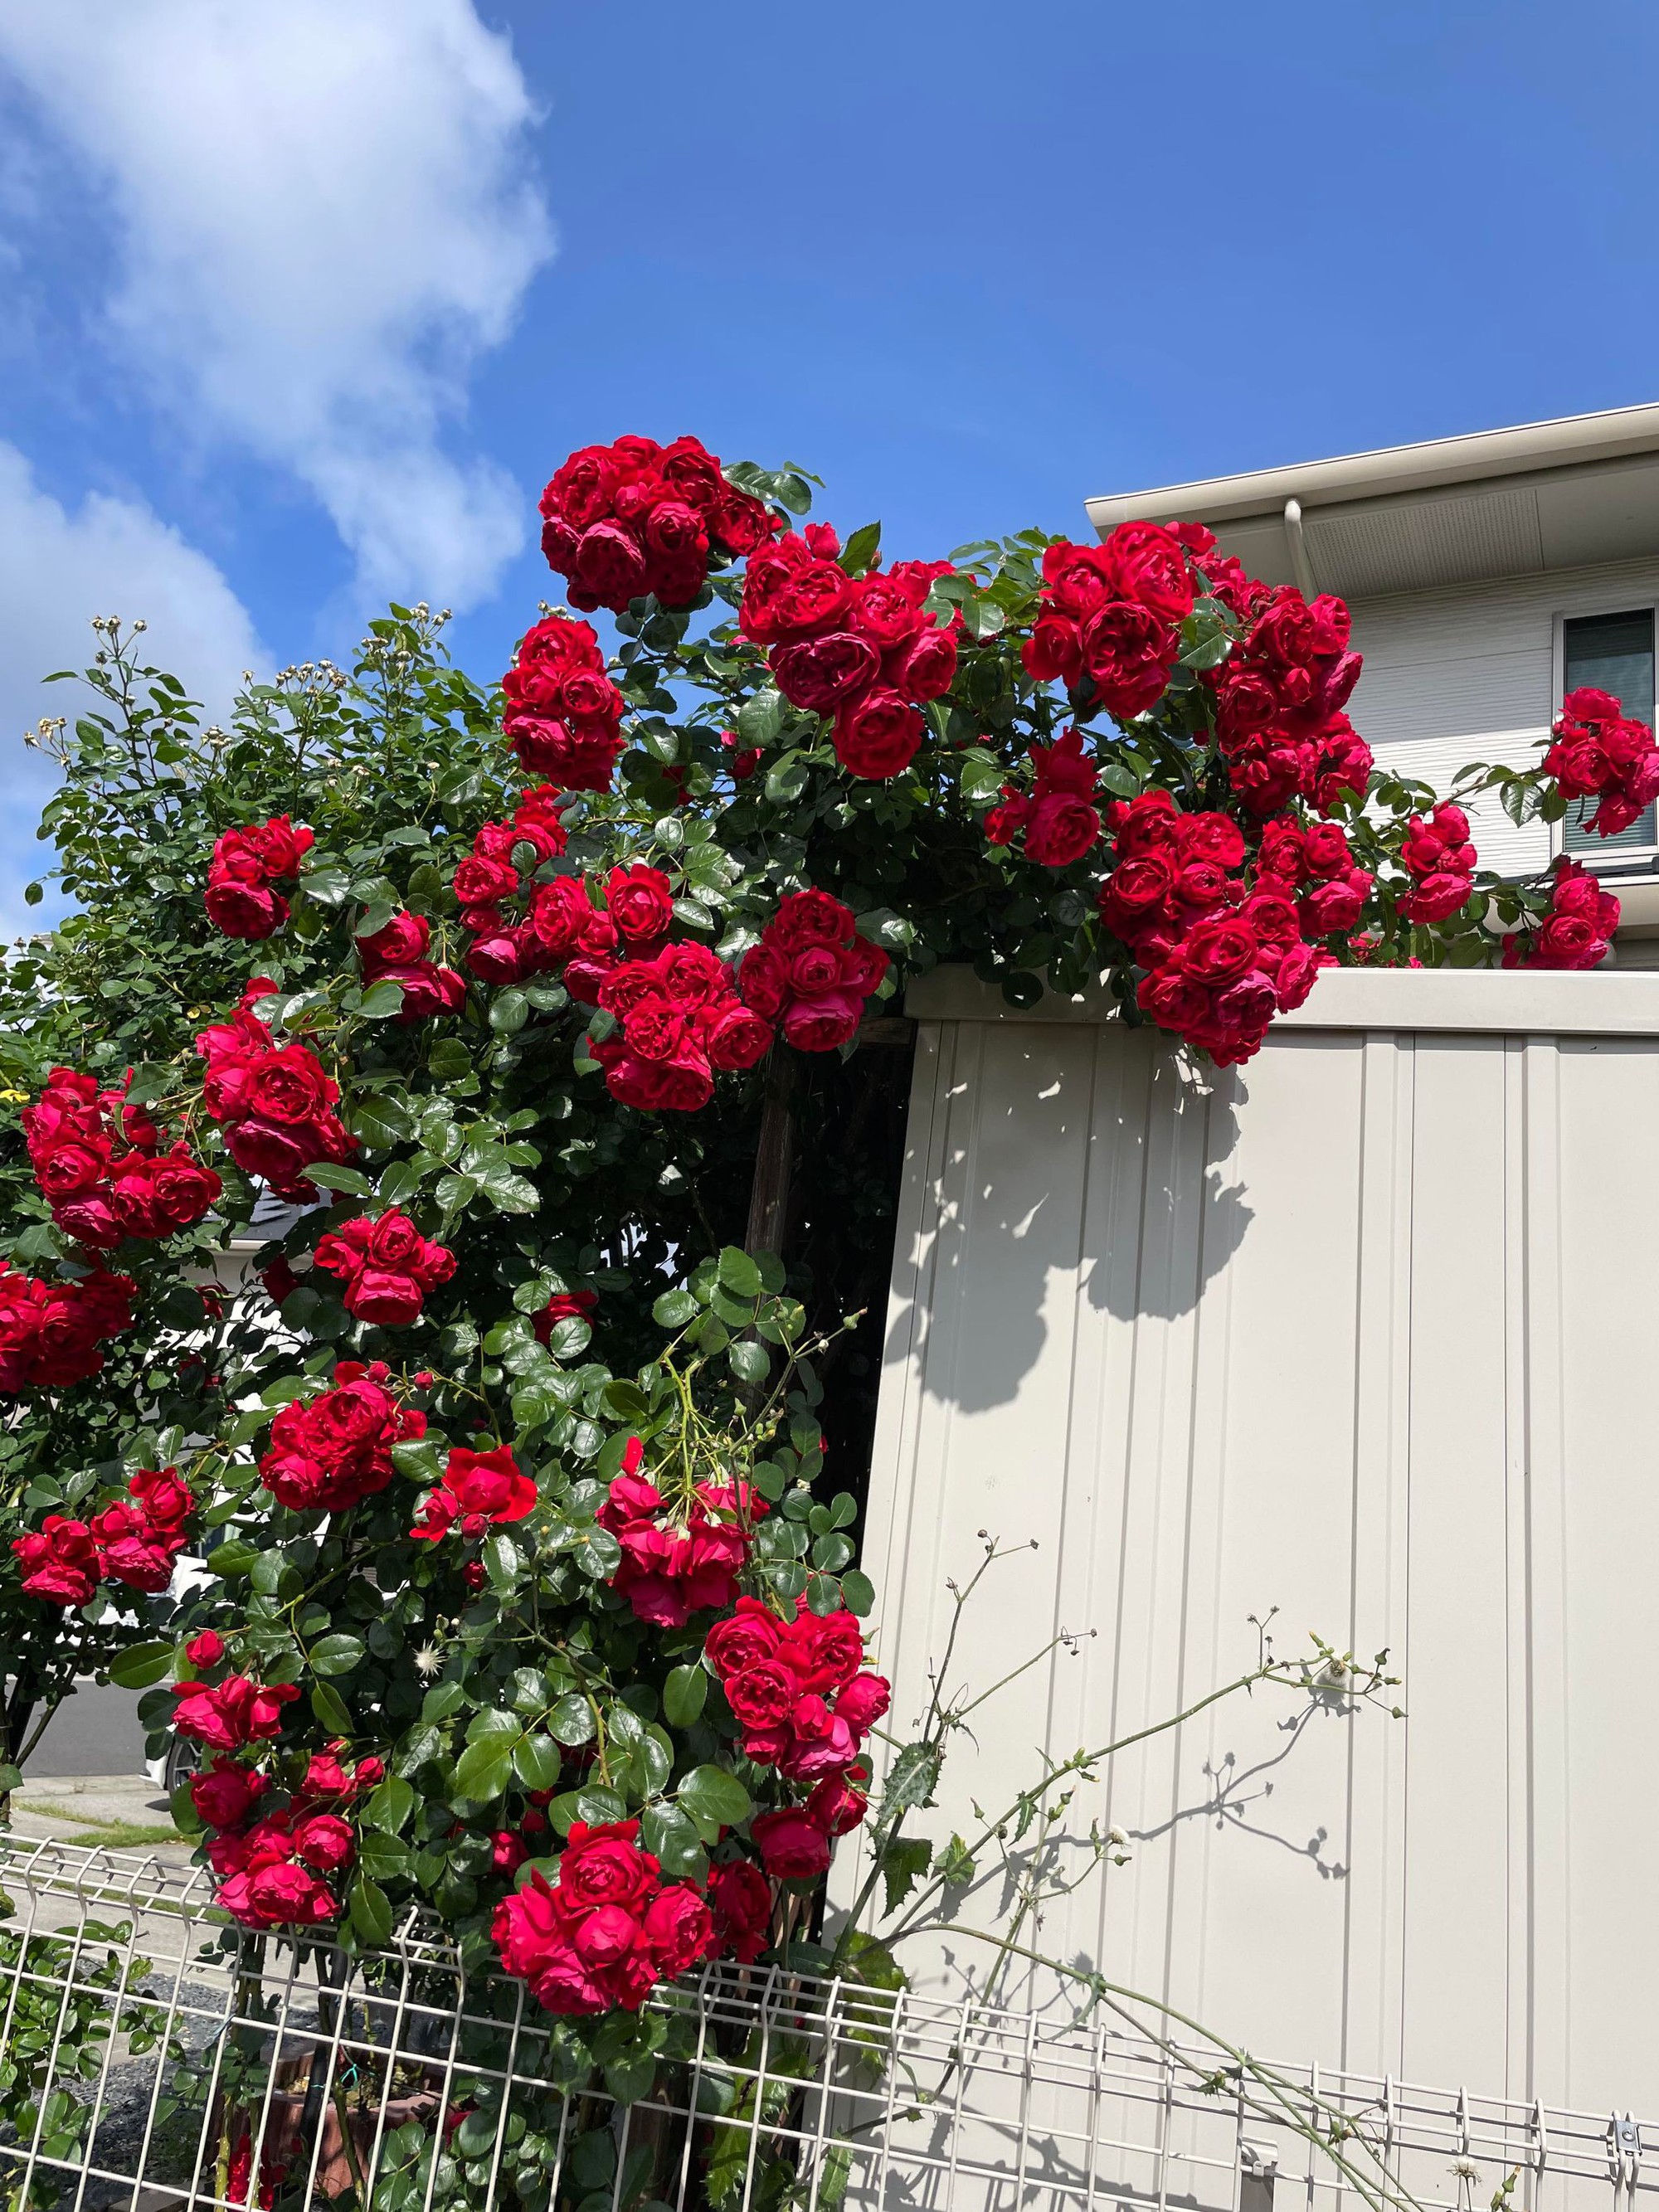 Ngôi nhà lúc nào cũng thơm nức mùi hoa vì có vườn hồng hơn 80 loại của mẹ Việt ở Nhật- Ảnh 6.